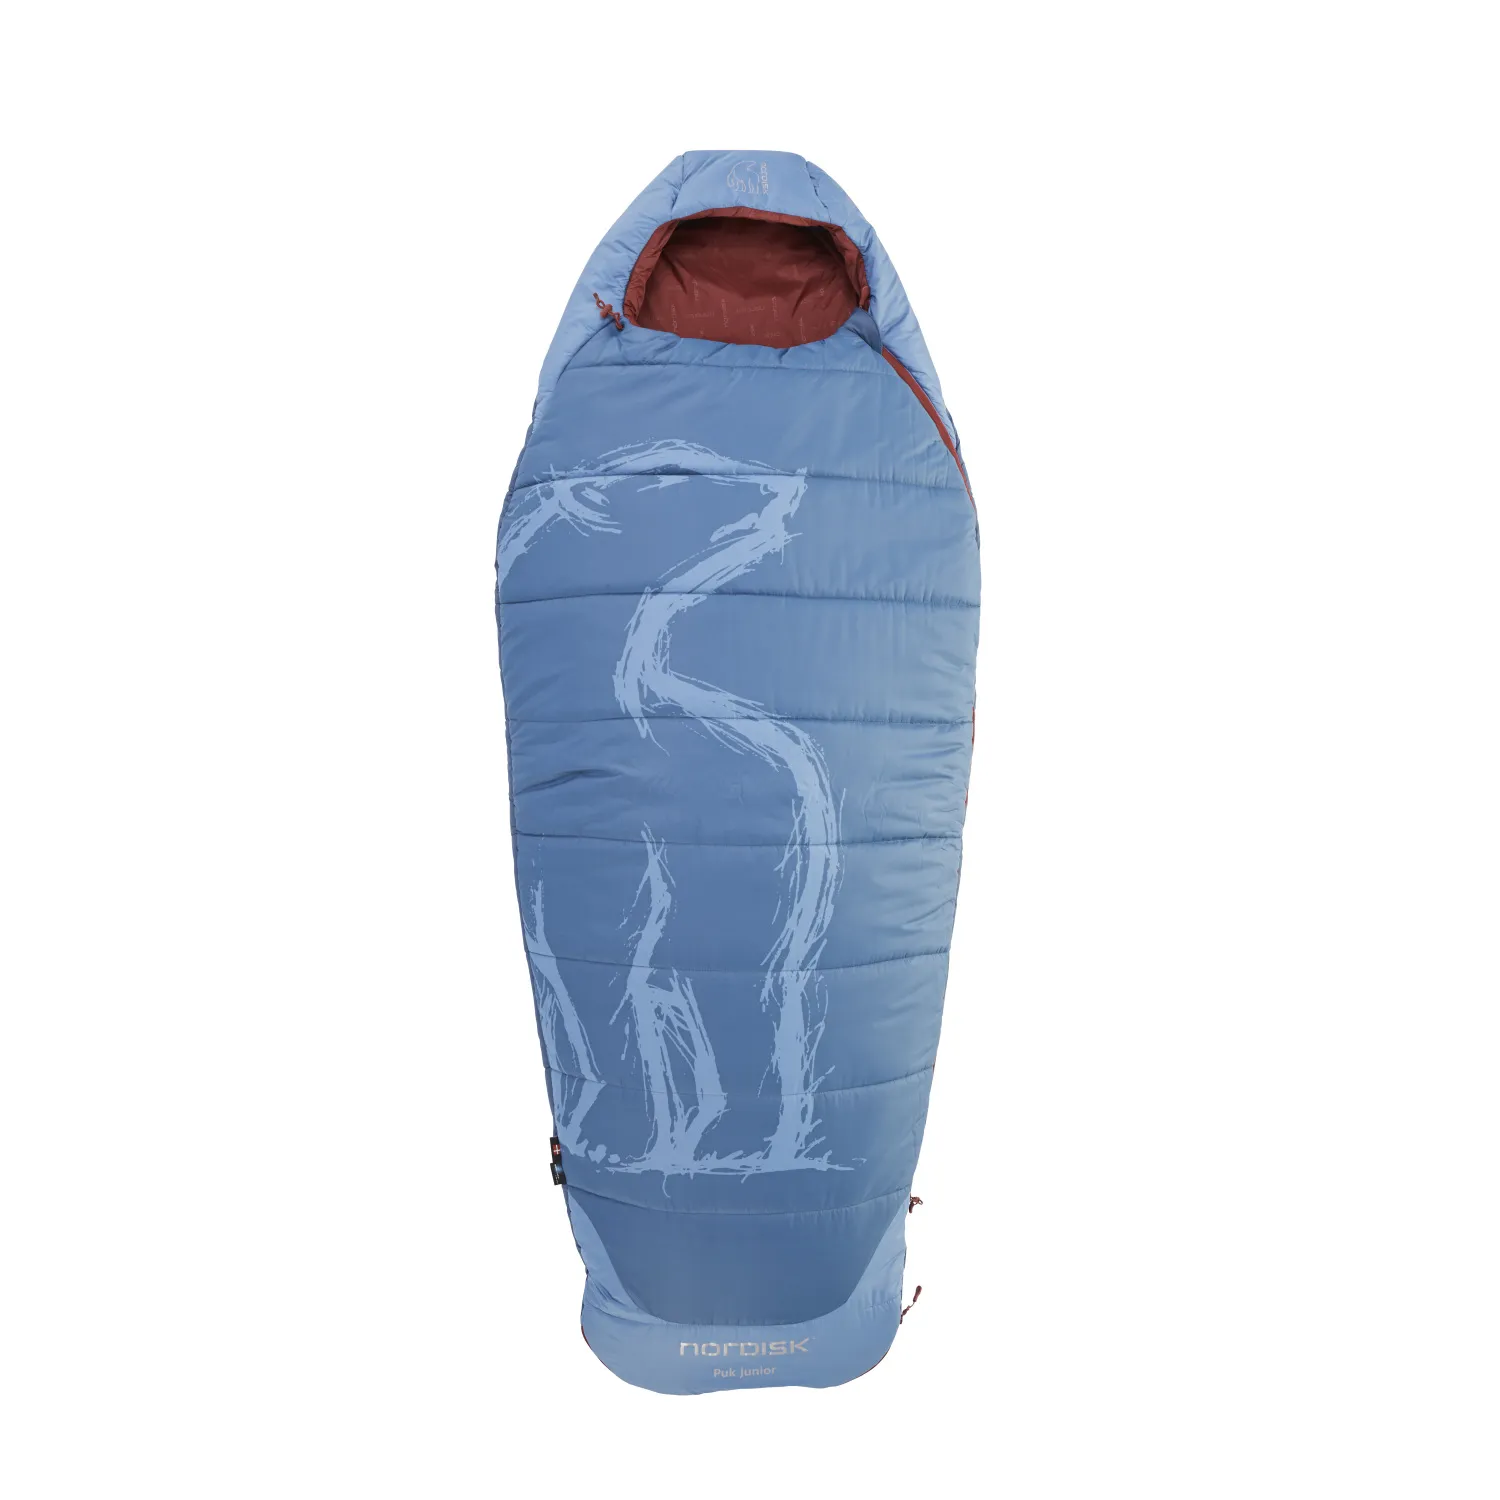 Puk-junior-110350-nordisk-sleeping-bag-for-kids-majolica-blue-01.jpg